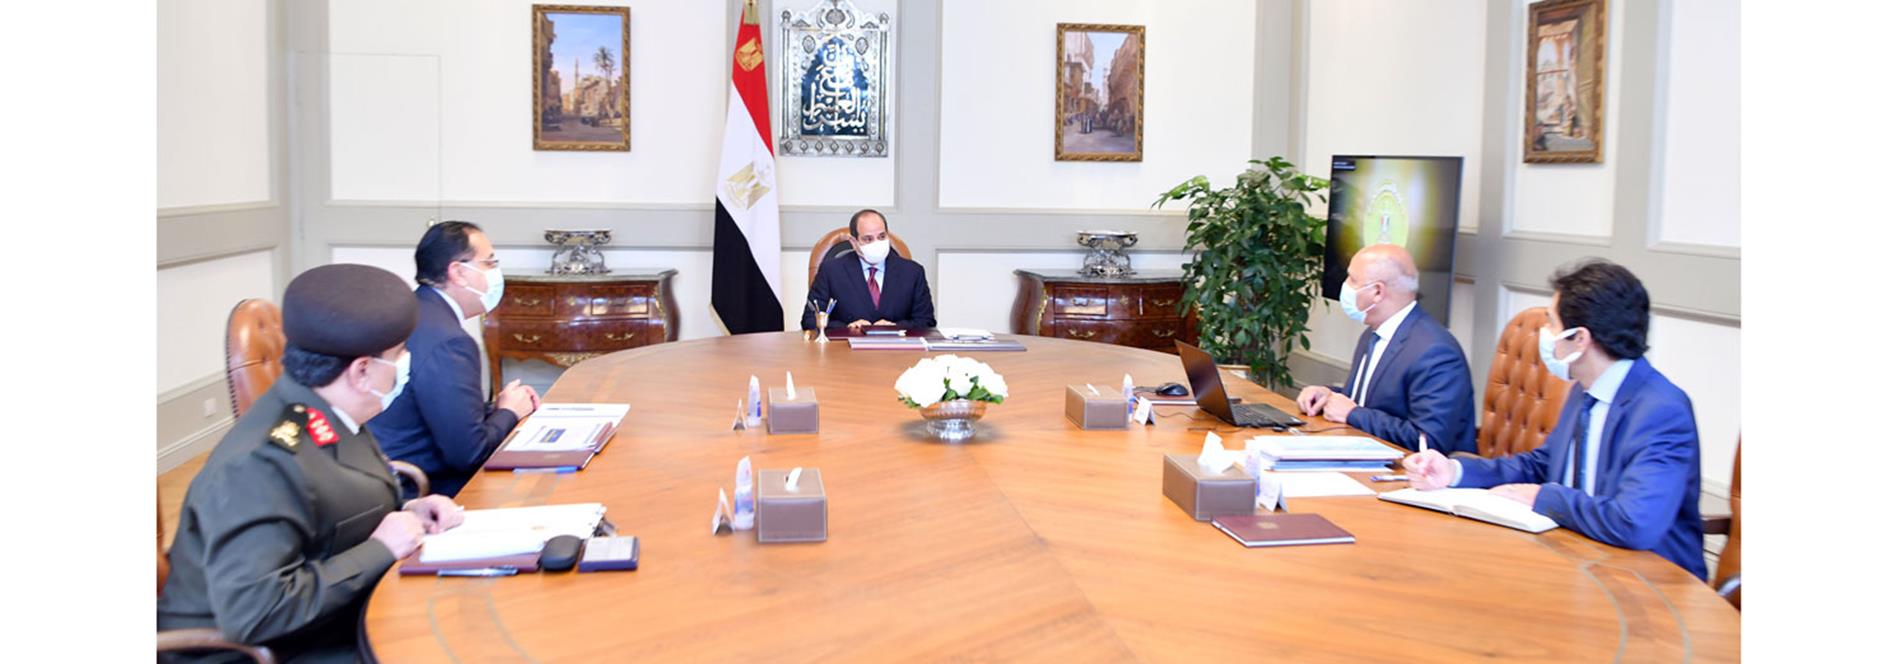 الرئيس عبد الفتاح السيسي يجتمع مع رئيس مجلس الوزراء ووزير النقل ورئيس هيئة الشئون المالية ق.م 16-1-2022